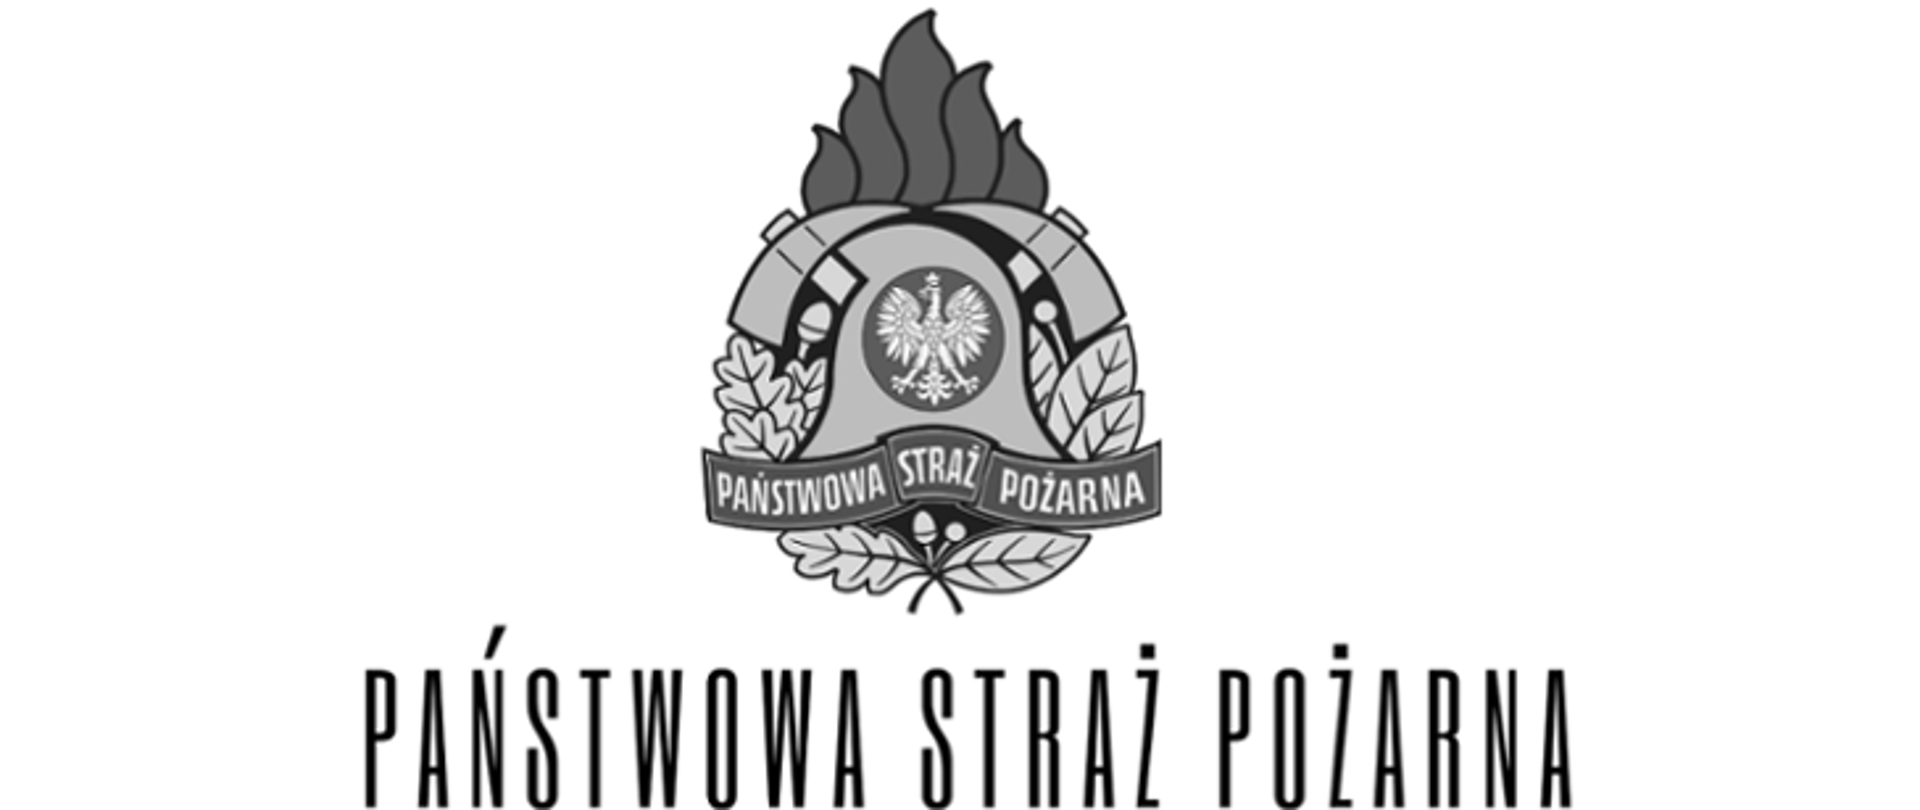 Napis czarny na białym tle Państwowa Straż Pożarna wraz z logotypem. 